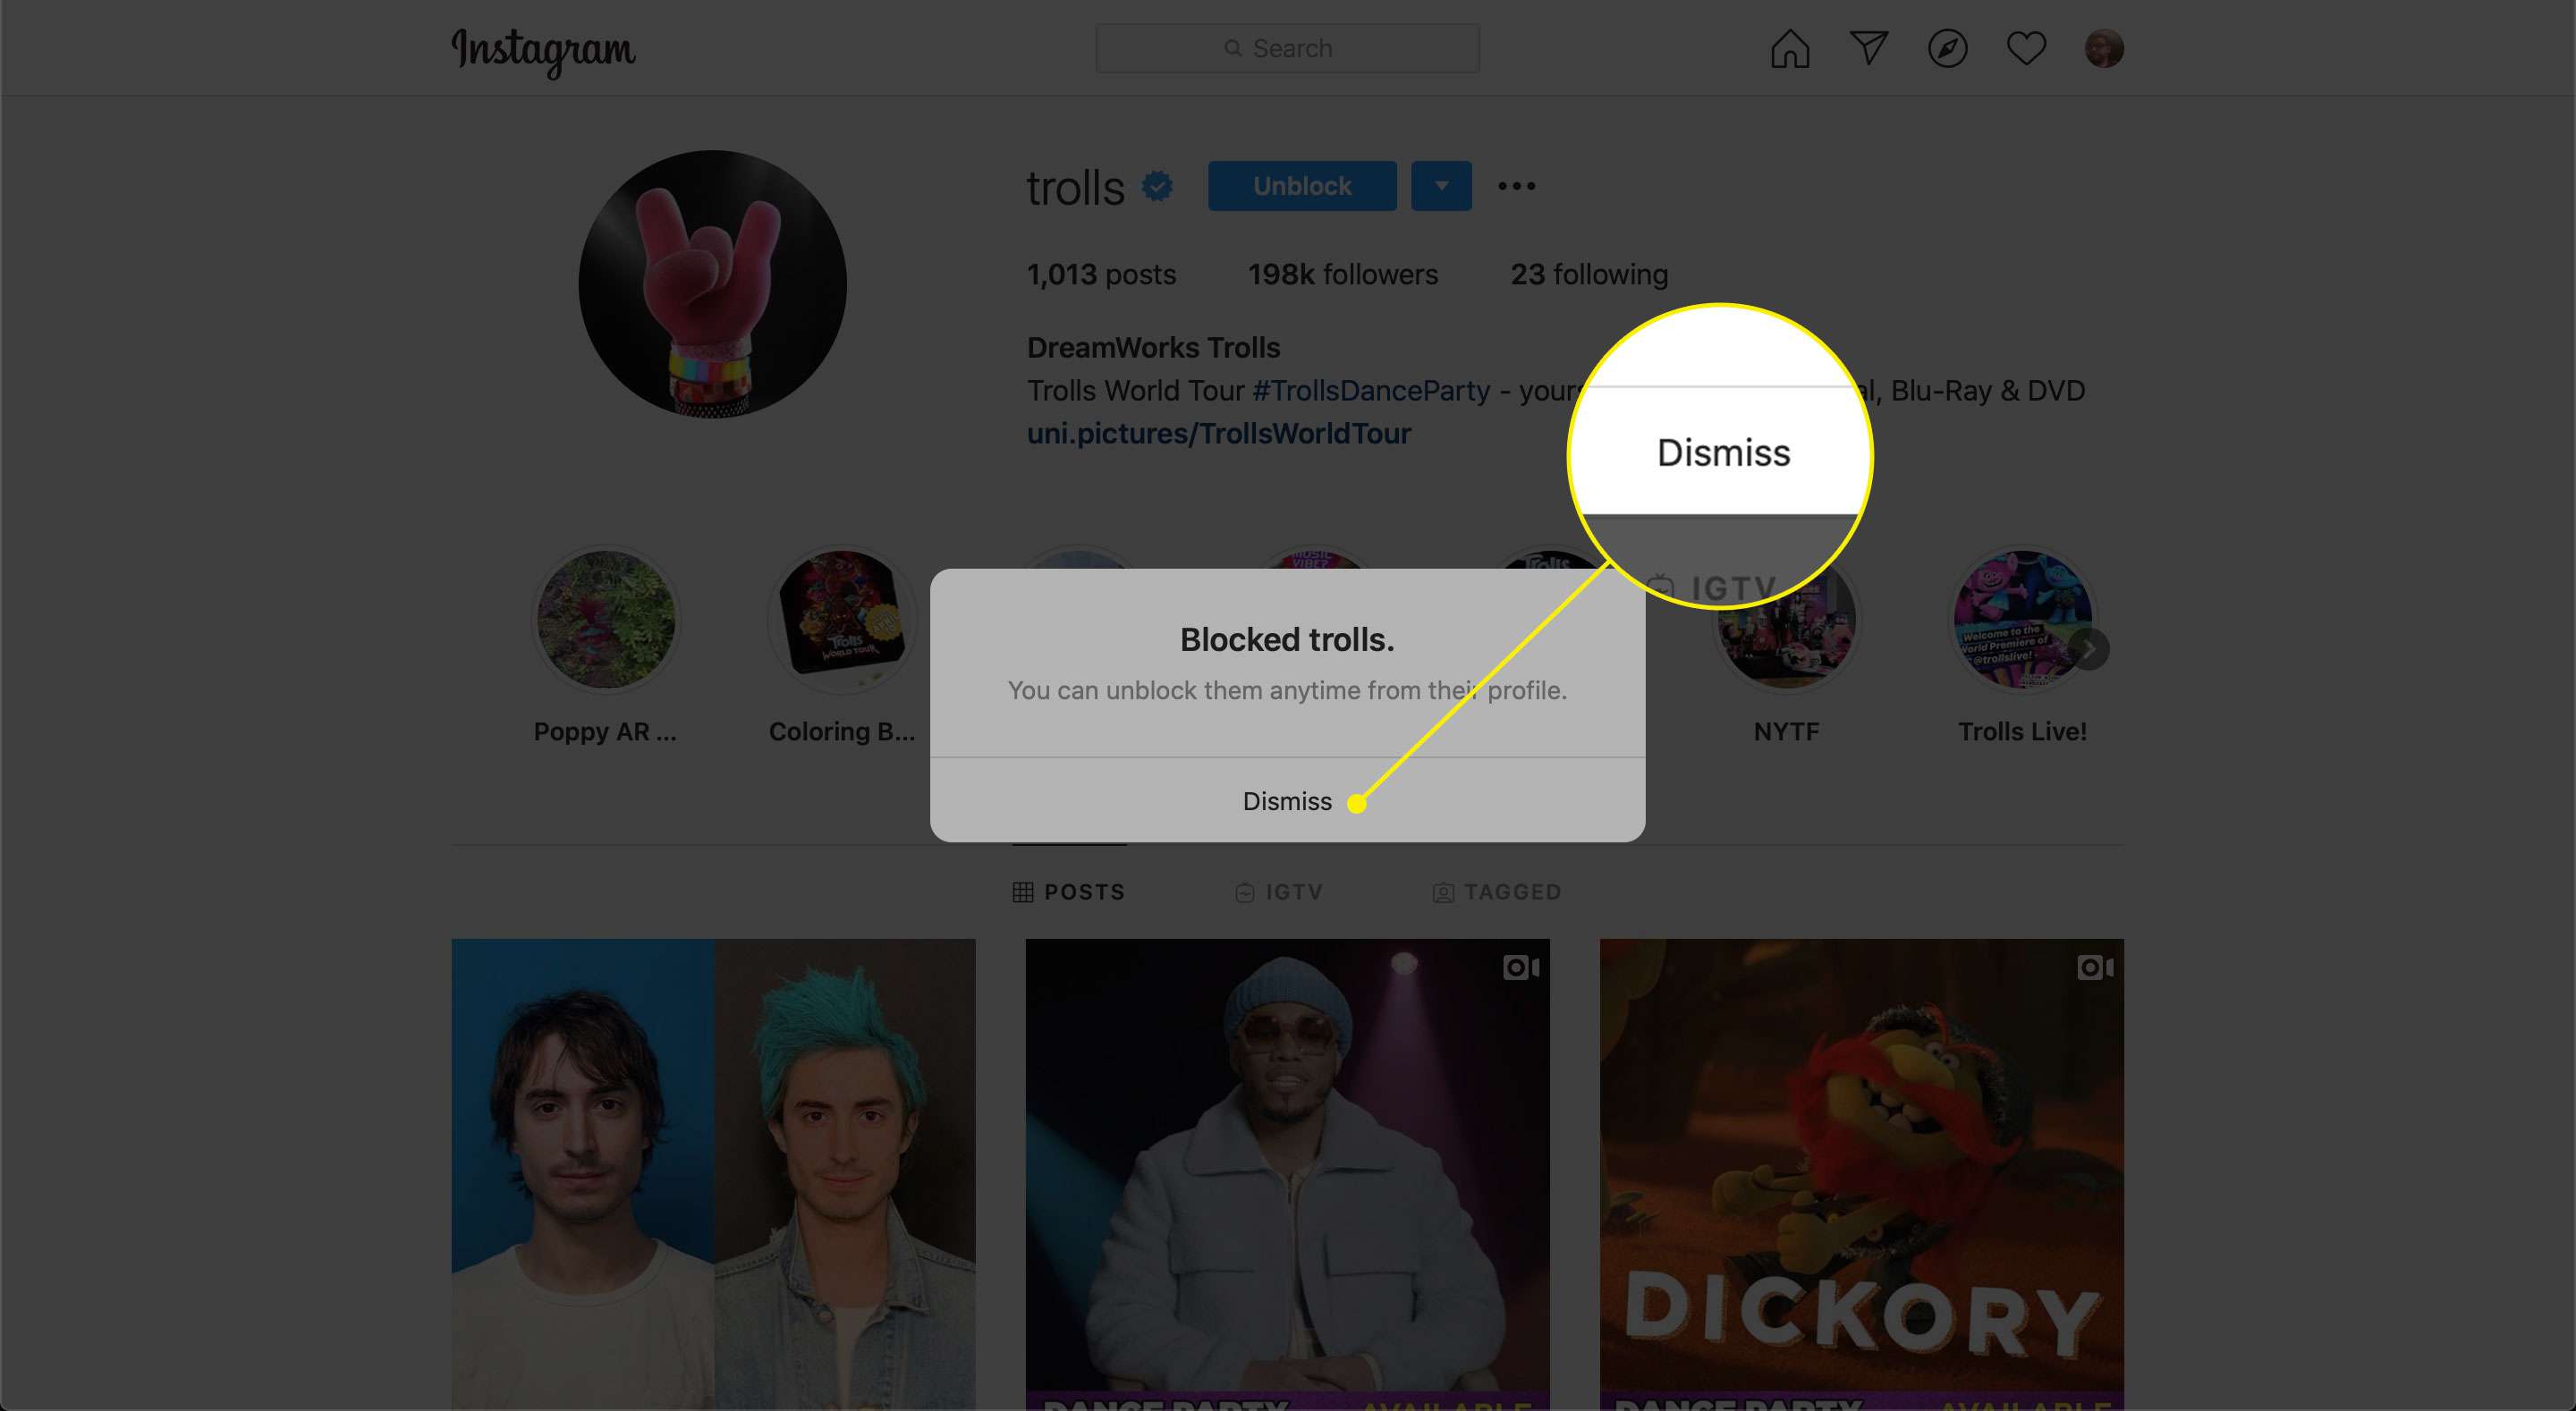 Kommandot Avvisa efter att ha blockerat ett konto på Instagram